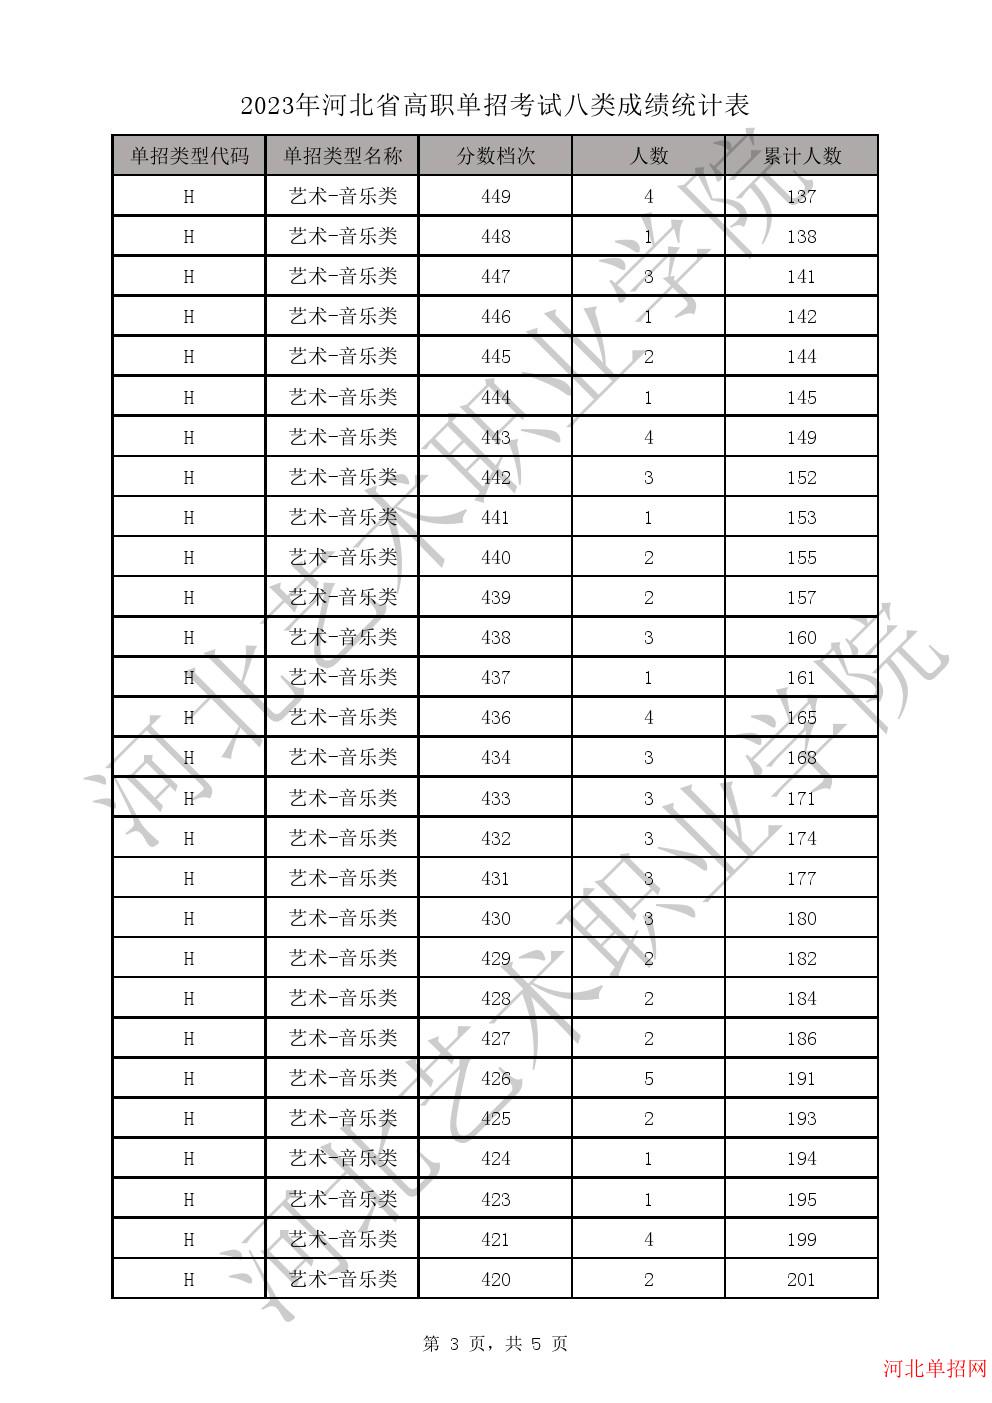 2023年河北省高职单招考试八类一分一档表-H艺术-音乐类一分一档表 图3